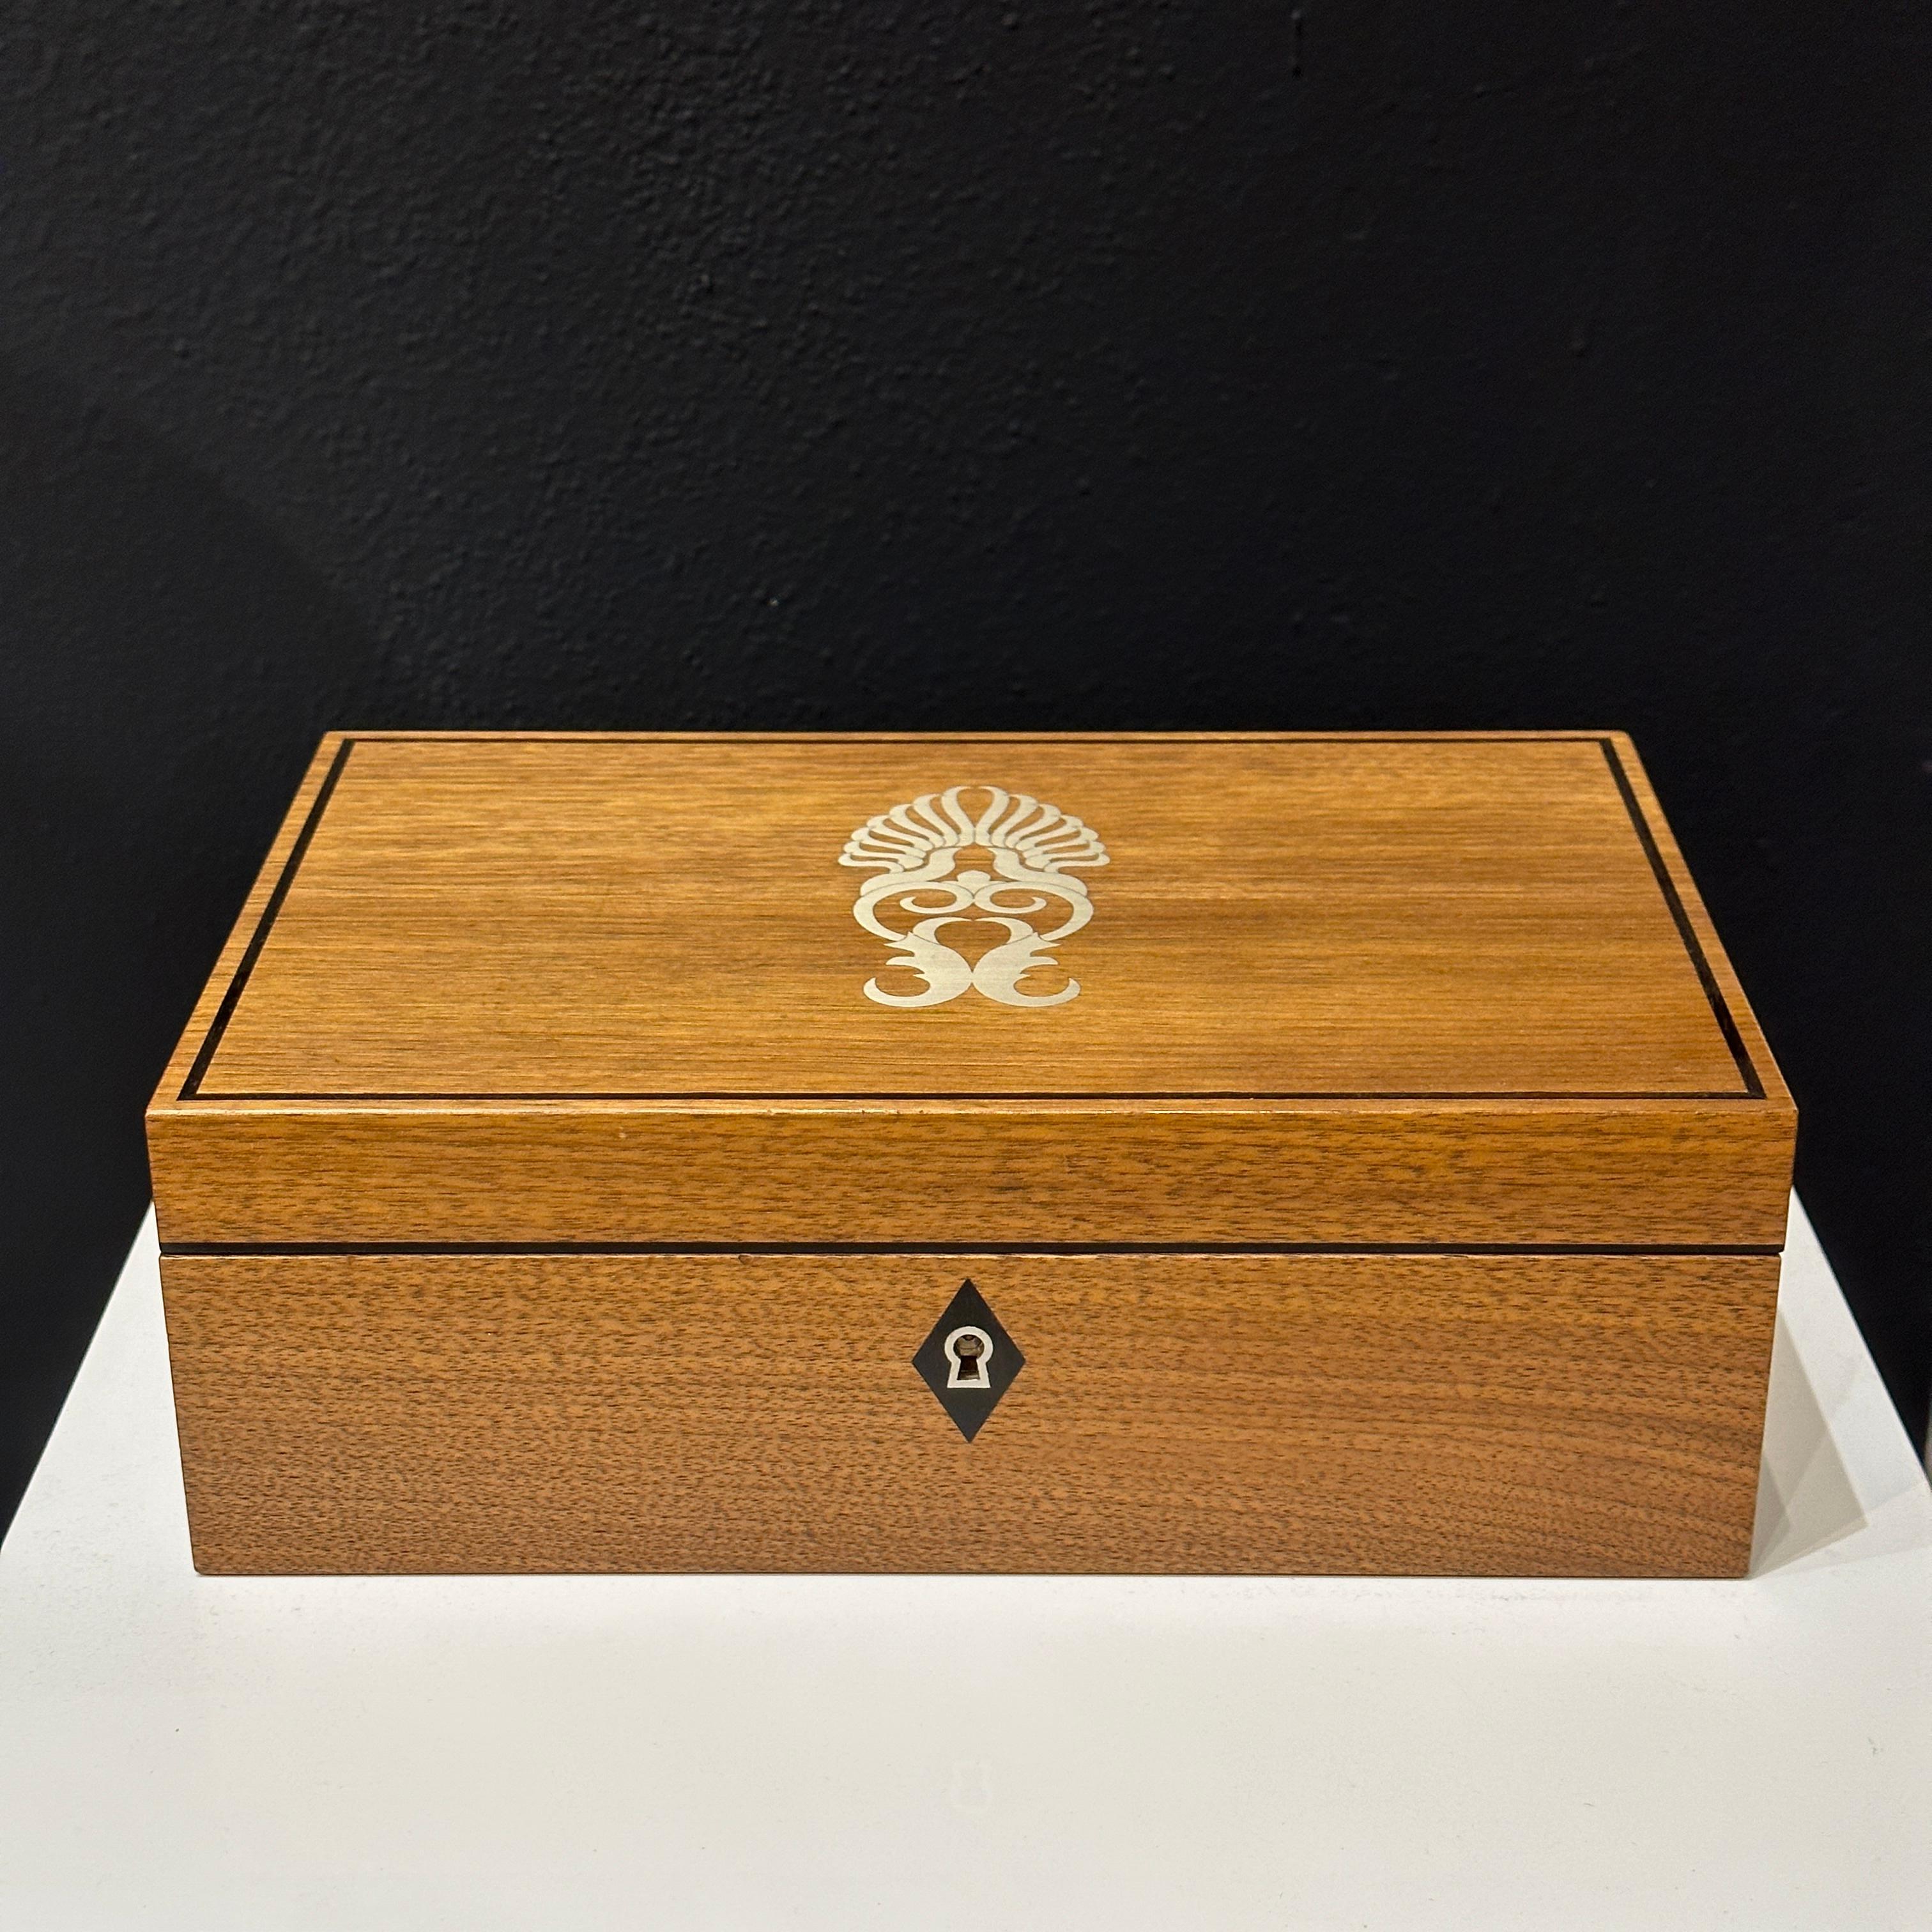 Voici une magnifique boîte à bijoux pour montres et boutons de manchette en marqueterie de bois avec incrustation d'argent, fabriquée par le producteur londonien d'articles de luxe, Linley. Ce coffret constitue un excellent cadeau pour vous-même ou